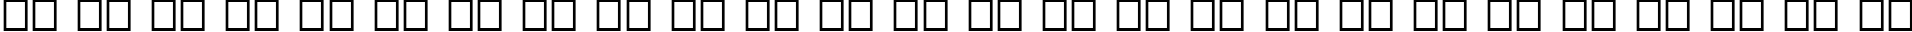 Пример написания английского алфавита шрифтом Ograda Normal